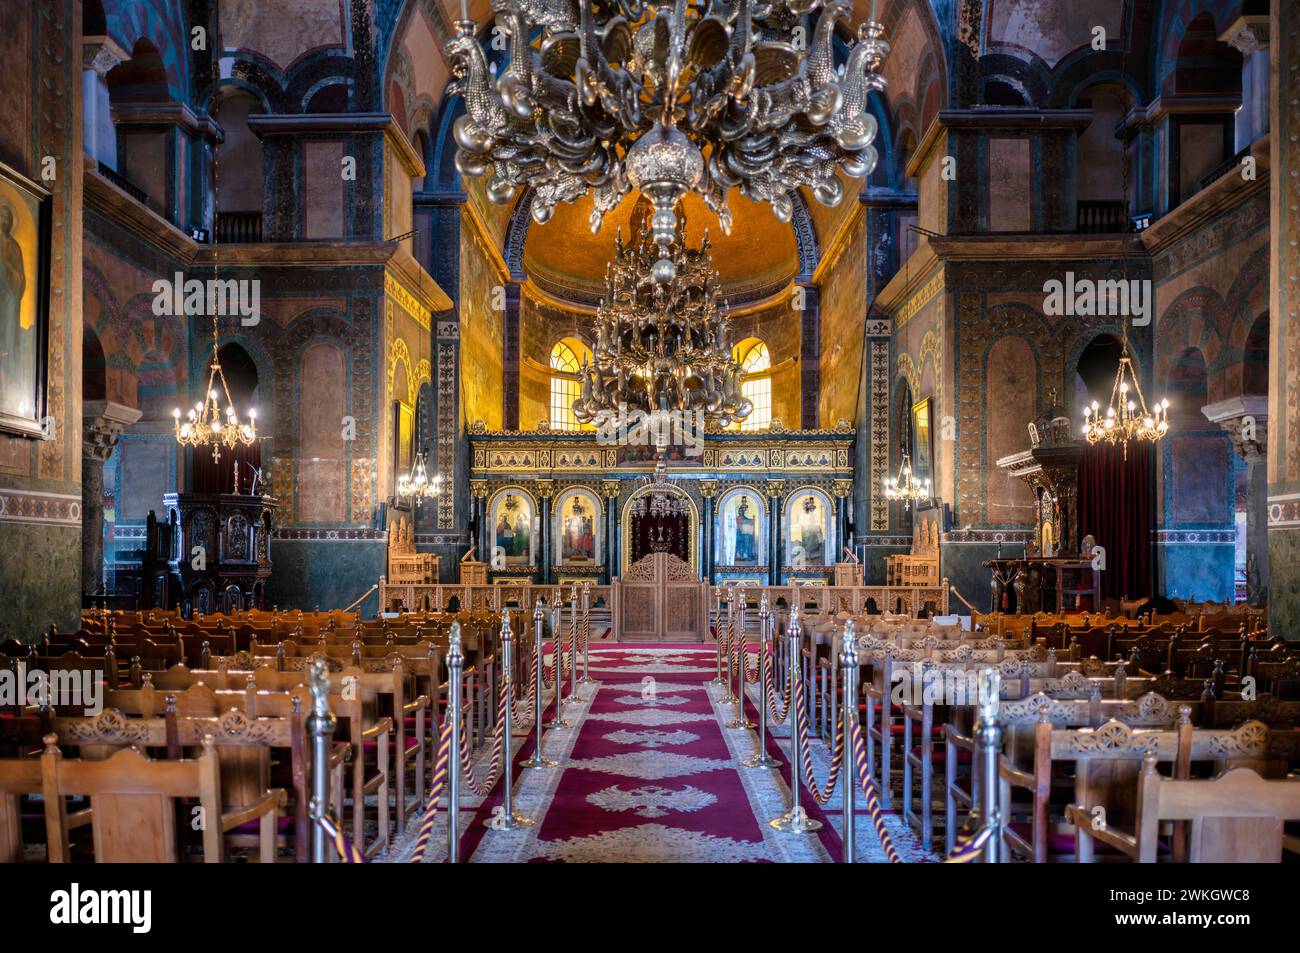 Vue intérieure de l'église Sainte-Sophie, également connue sous le nom d'Agia Sofia, autel, lustre, Thessalonique, Macédoine, Grèce Banque D'Images